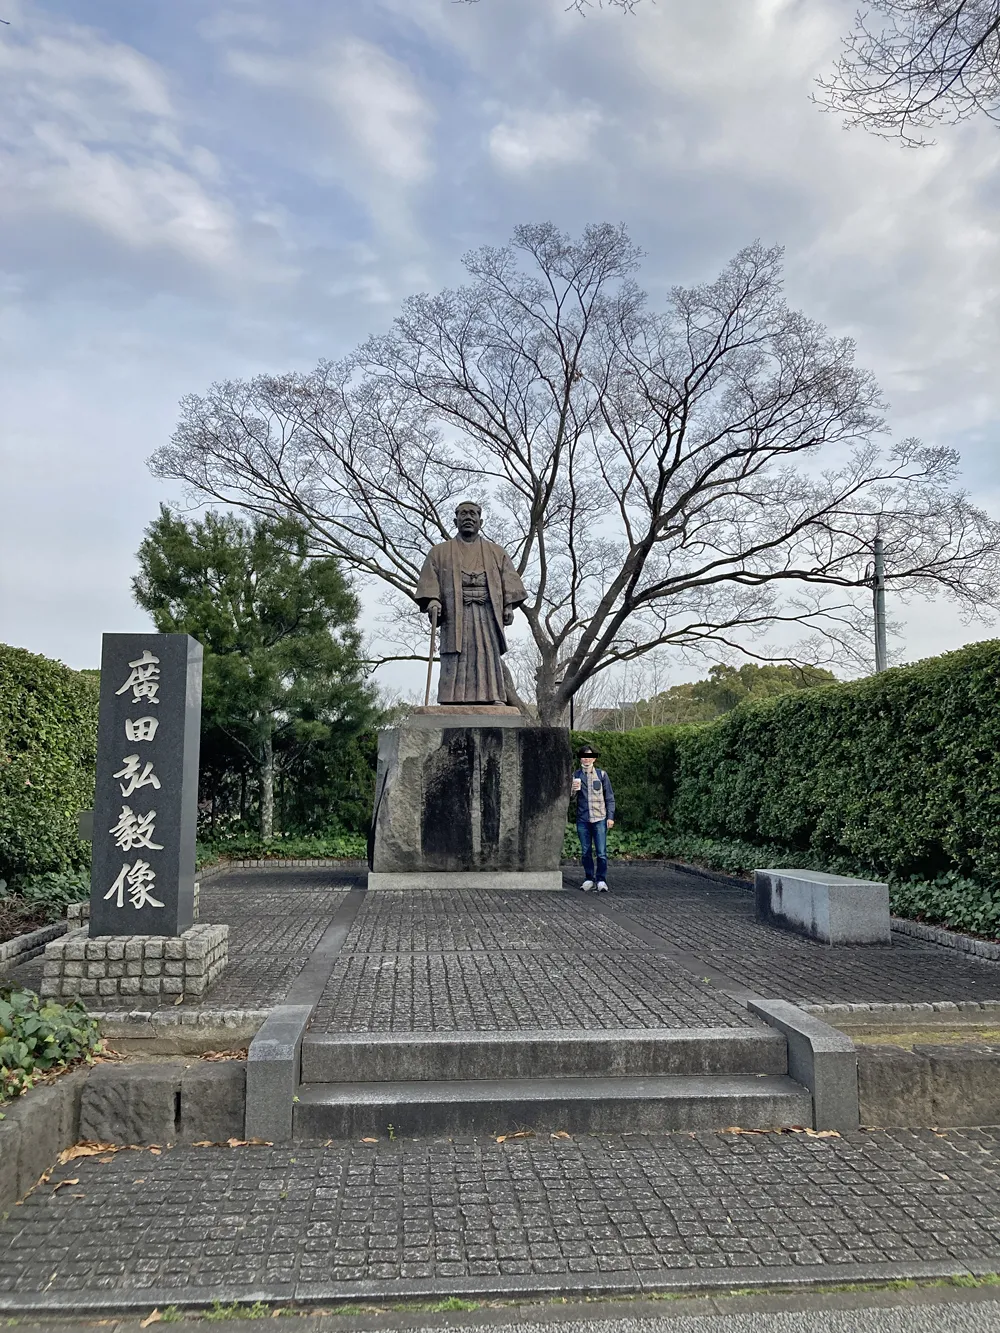 なんしようと？のロケ地。大吉先生が東京に染まったため大濠公園の廣田弘毅像で懺悔。